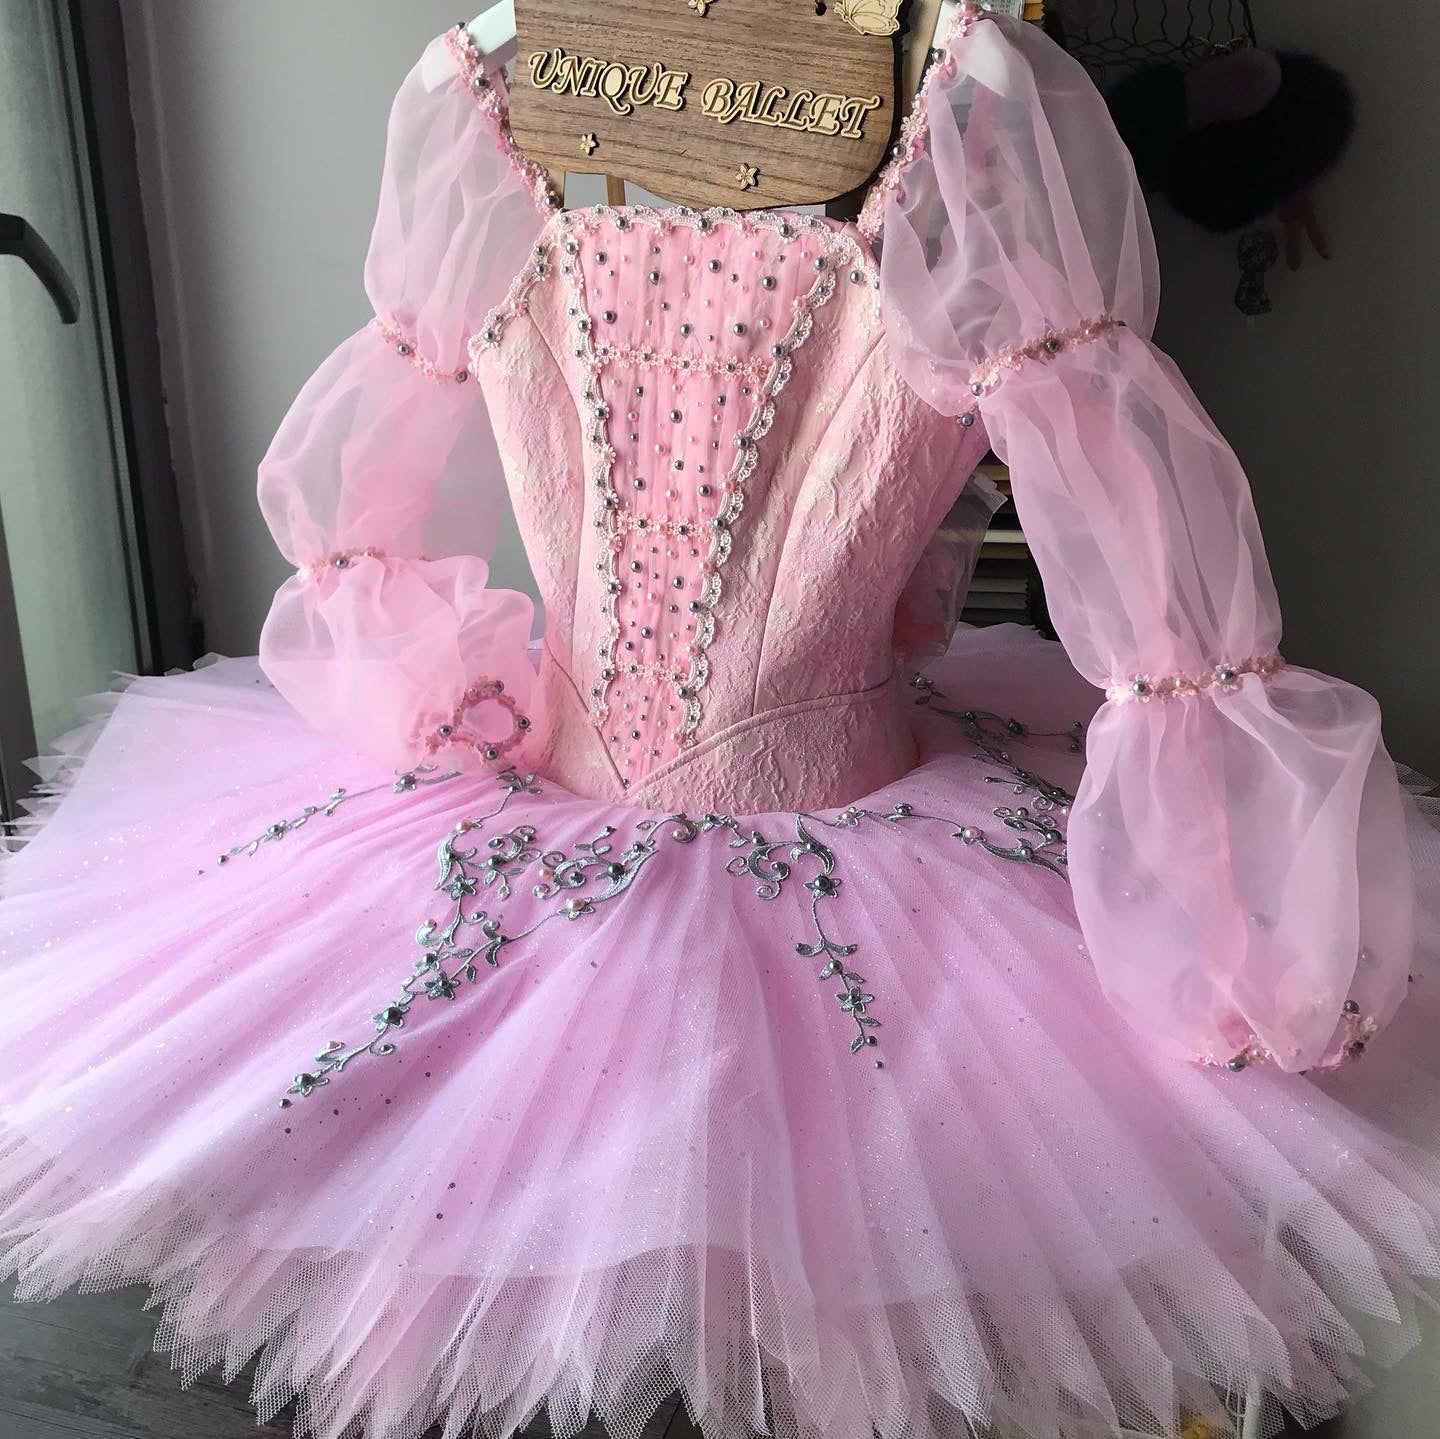 Classical Ballet Costume (Professional) – UniqueBallet